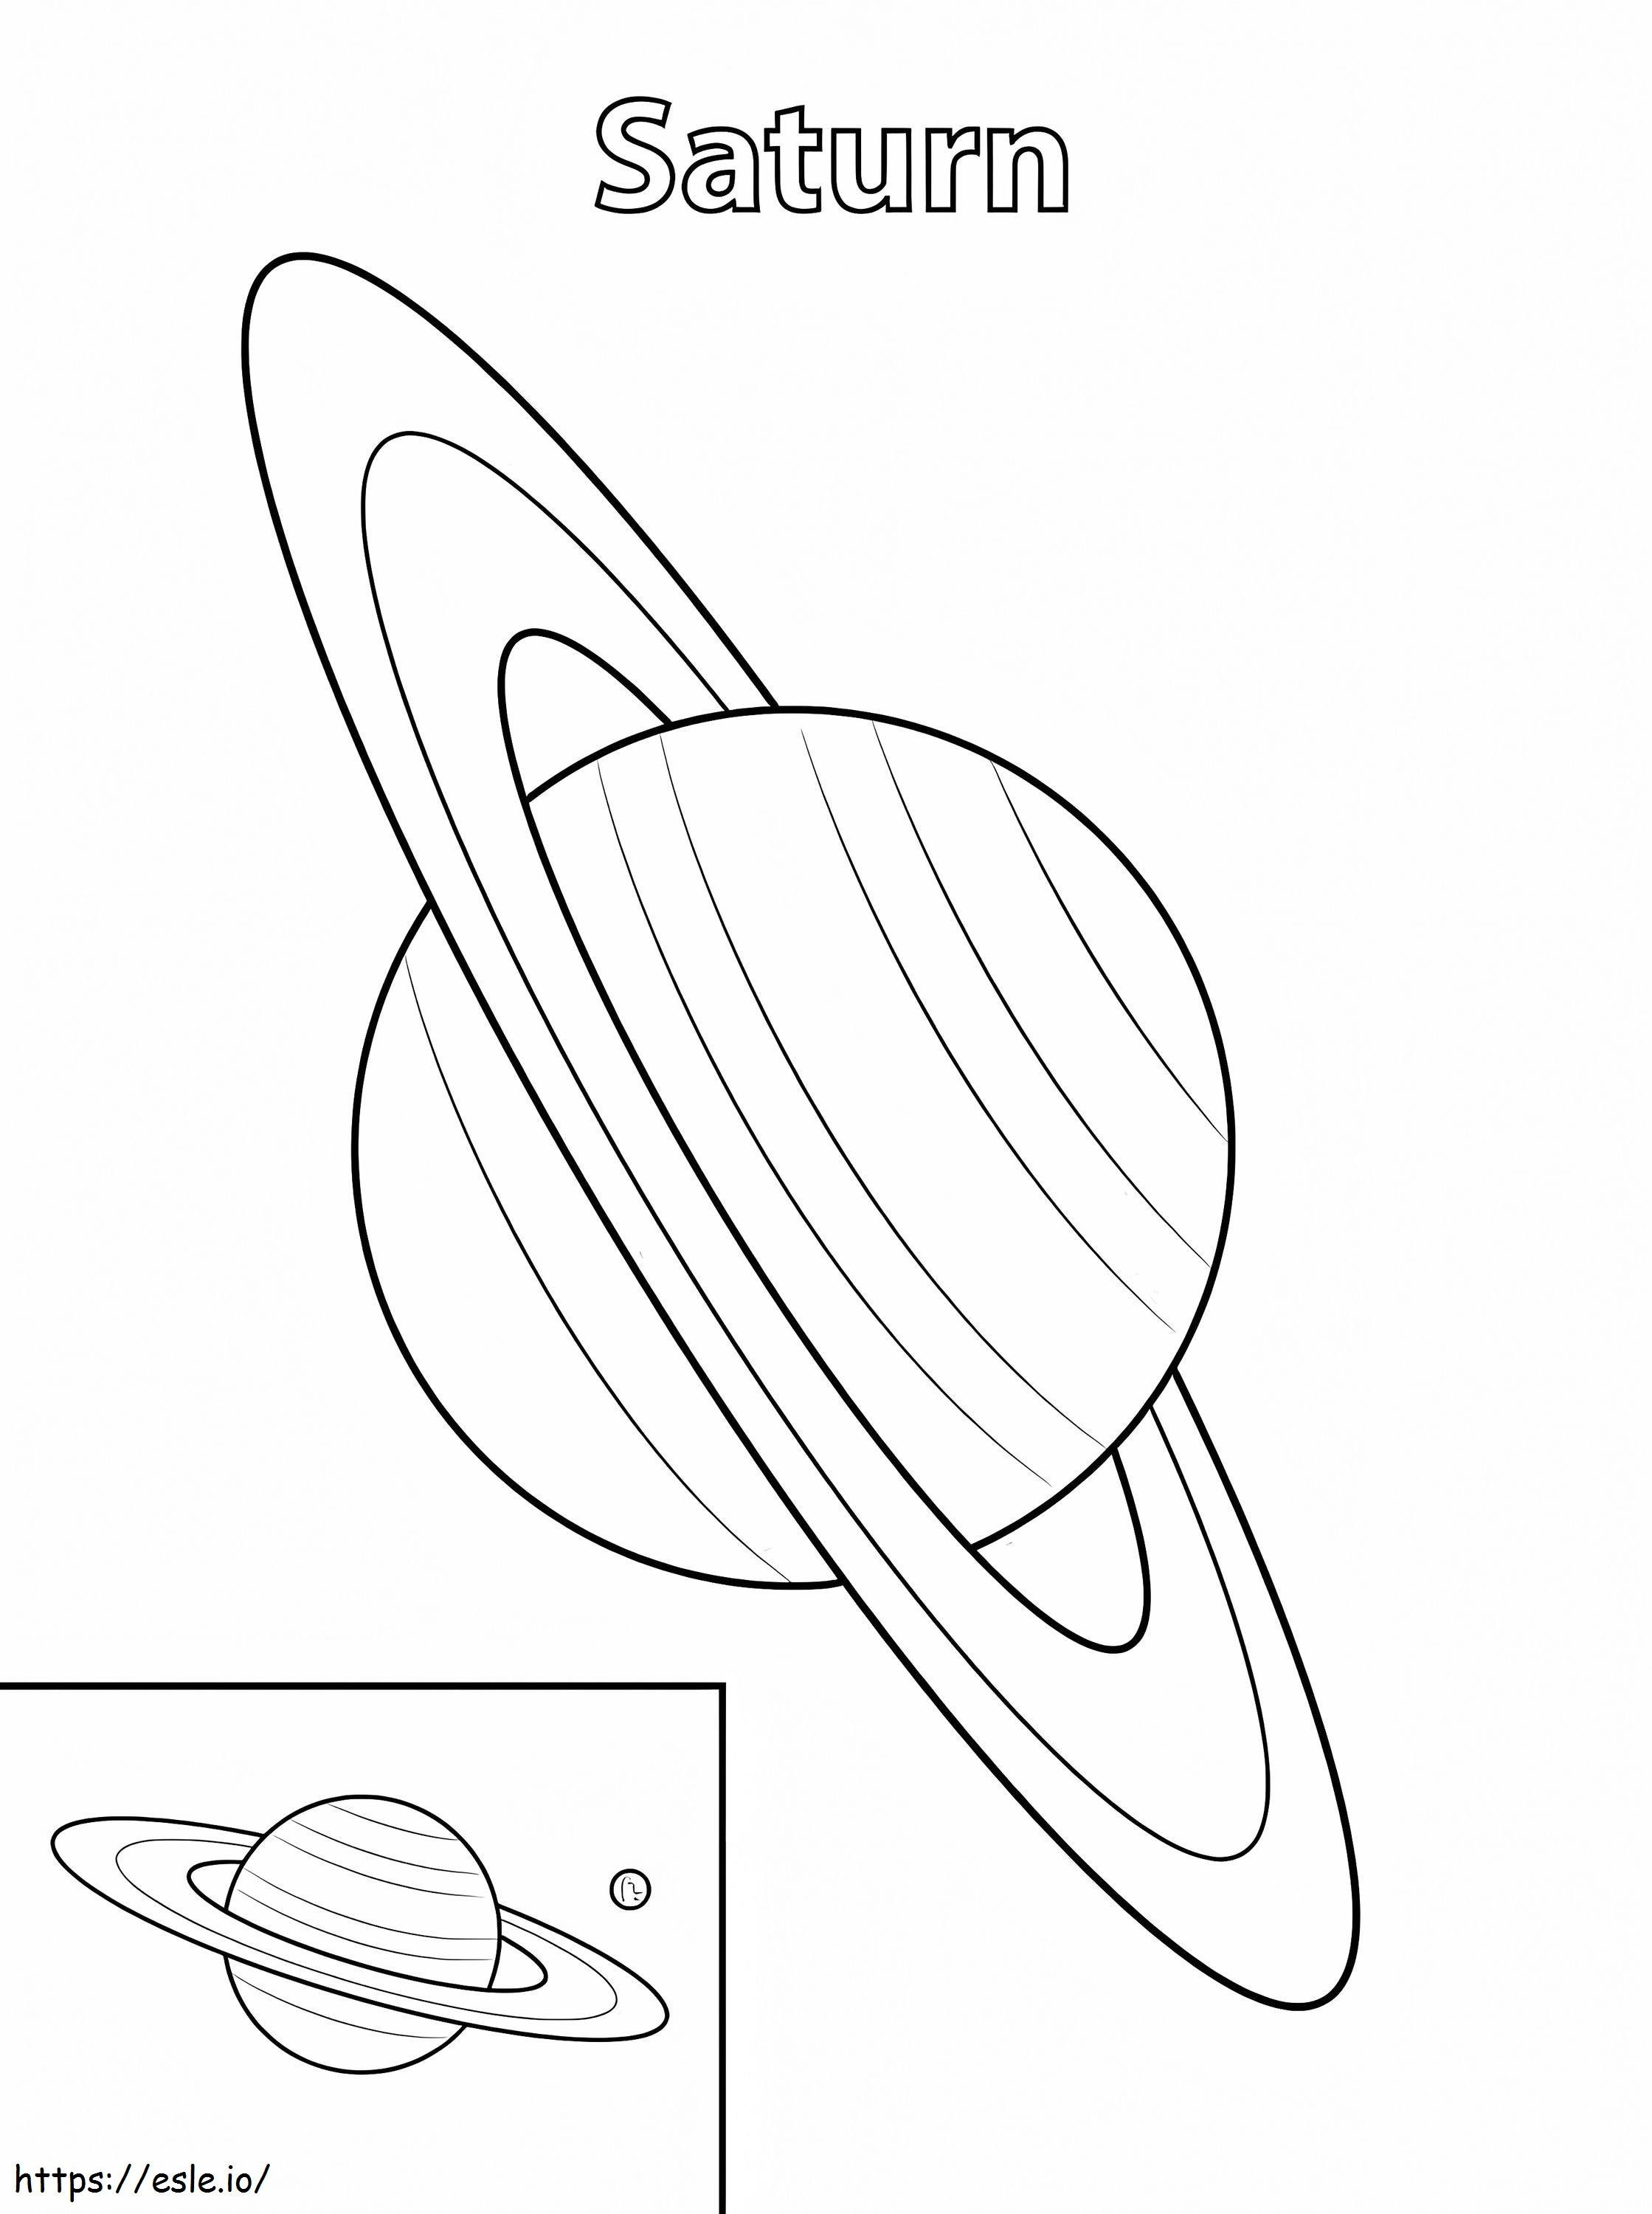 Planet Saturn ausmalbilder